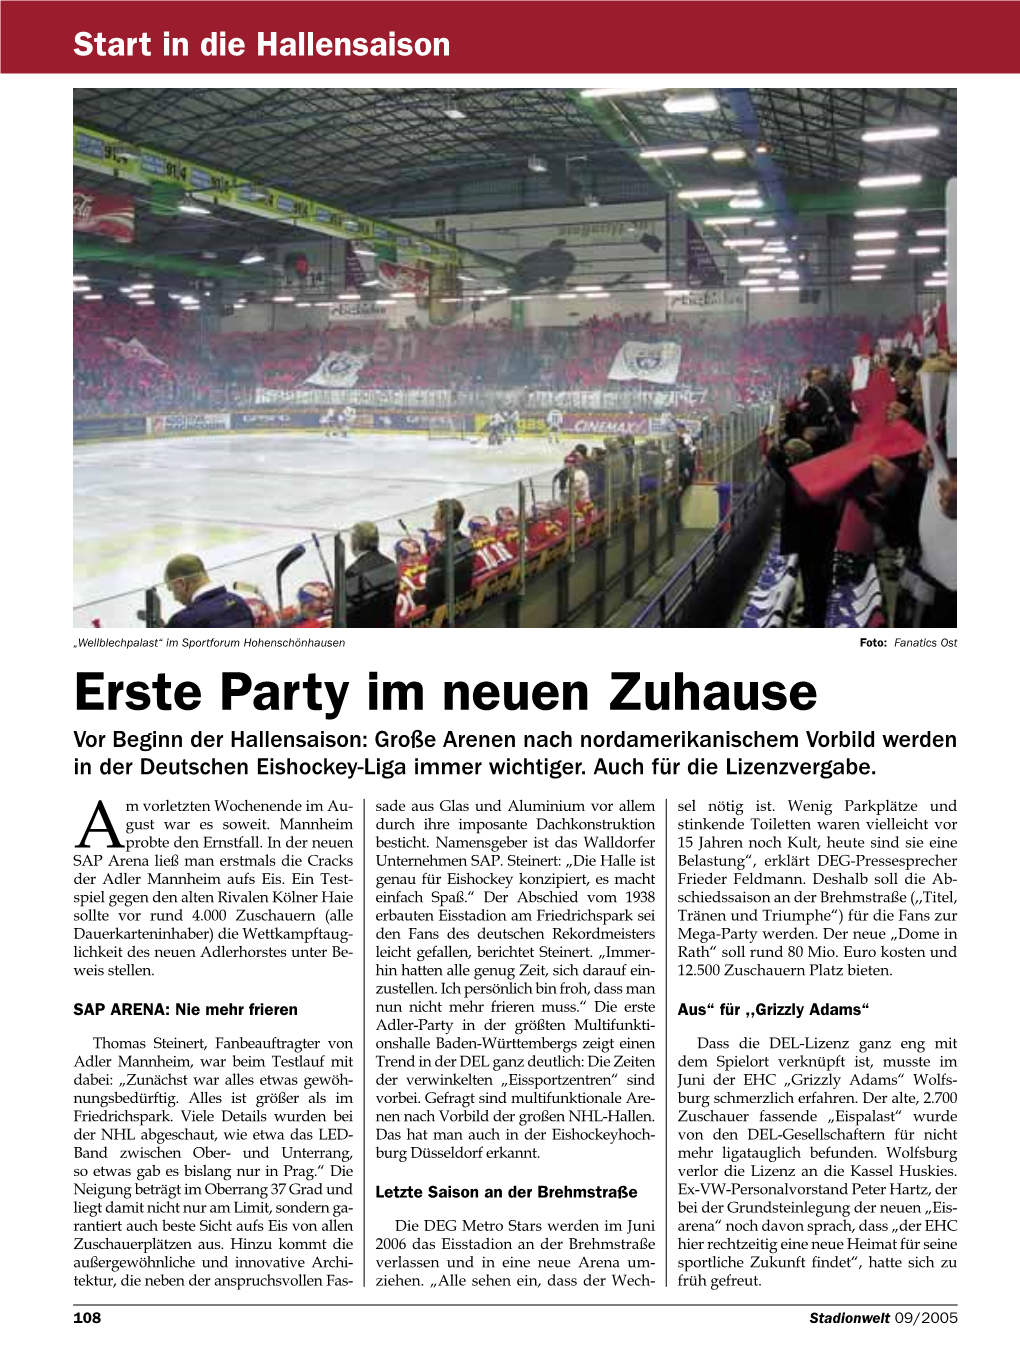 Erste Party Im Neuen Zuhause Vor Beginn Der Hallensaison: Große Arenen Nach Nordamerikanischem Vorbild Werden in Der Deutschen Eishockey-Liga Immer Wichtiger